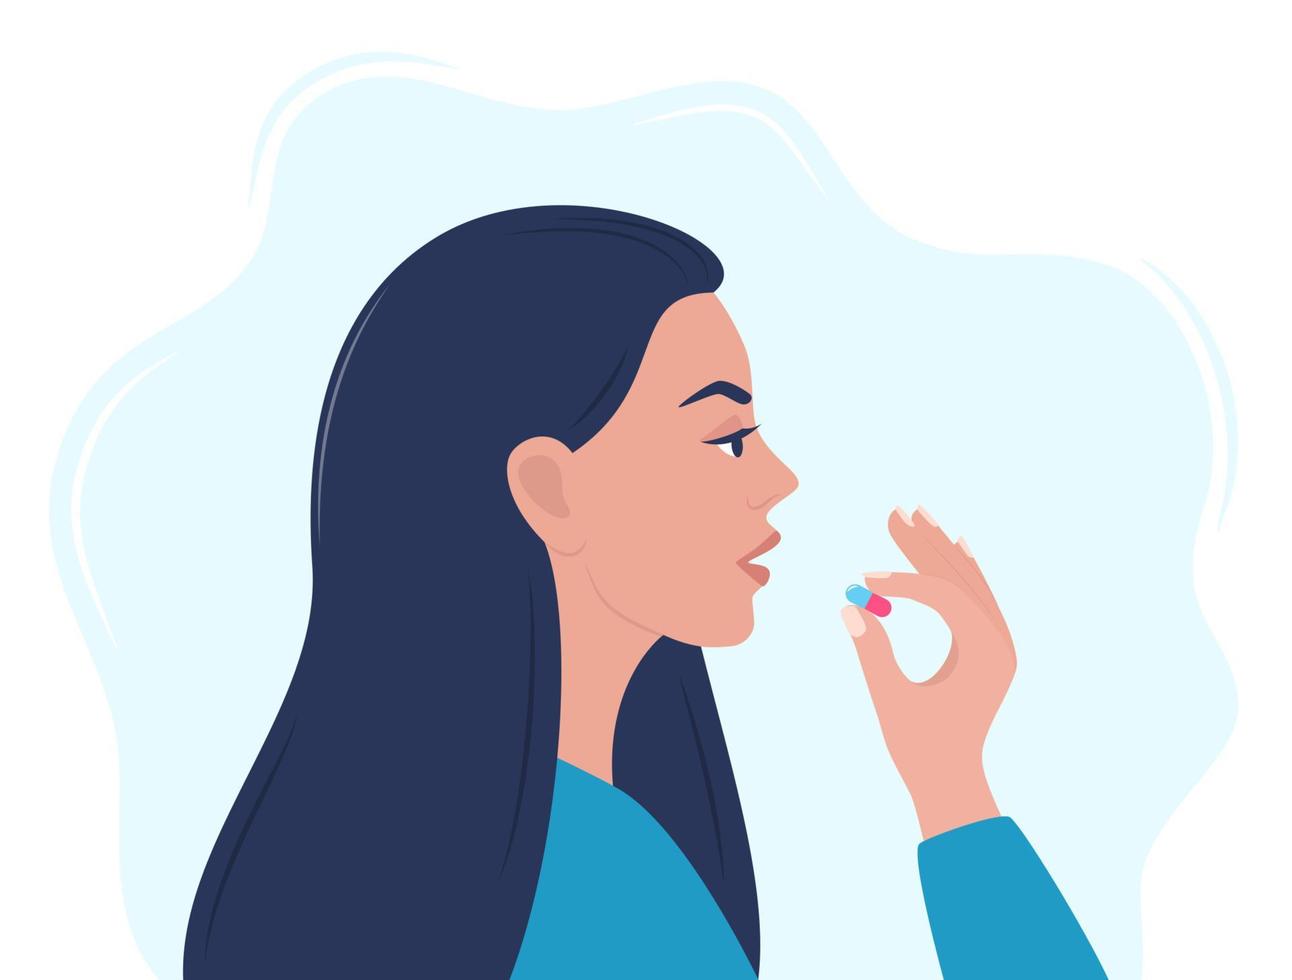 kvinna tar en piller i till henne mun. kvinna innehar en piller i henne hand och avser till ta Det. medicin behandling, apotek och medicin, begrepp vektor illustration.